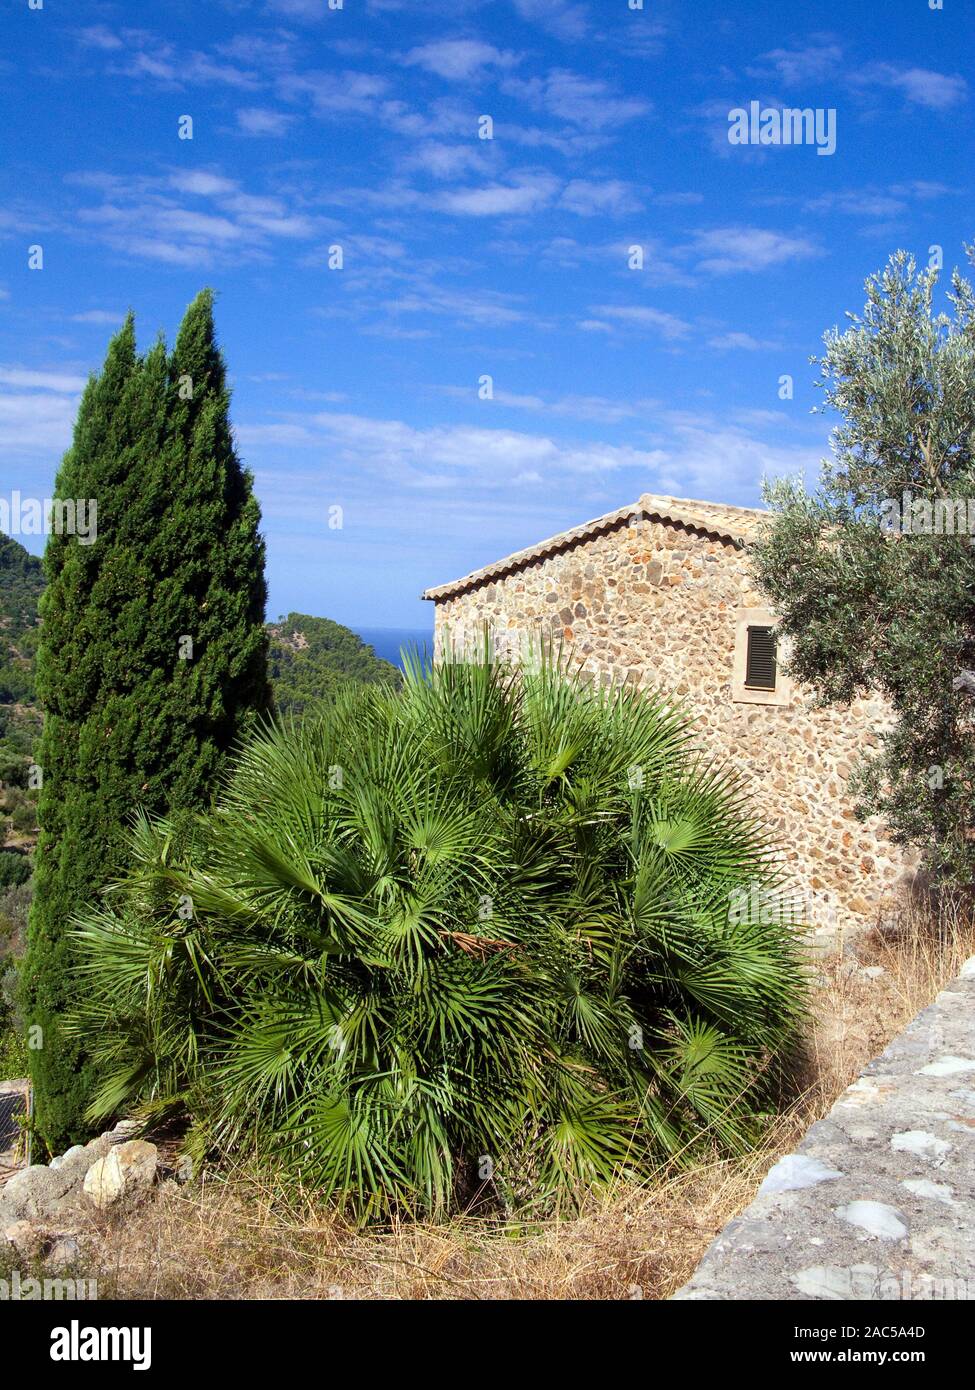 Saw Palmetto (palmier Serenoa repens, synonyme : Sabal serrulata) dans une petite Finca, Estellences, Majorque, îles Baléares, Espagne Banque D'Images